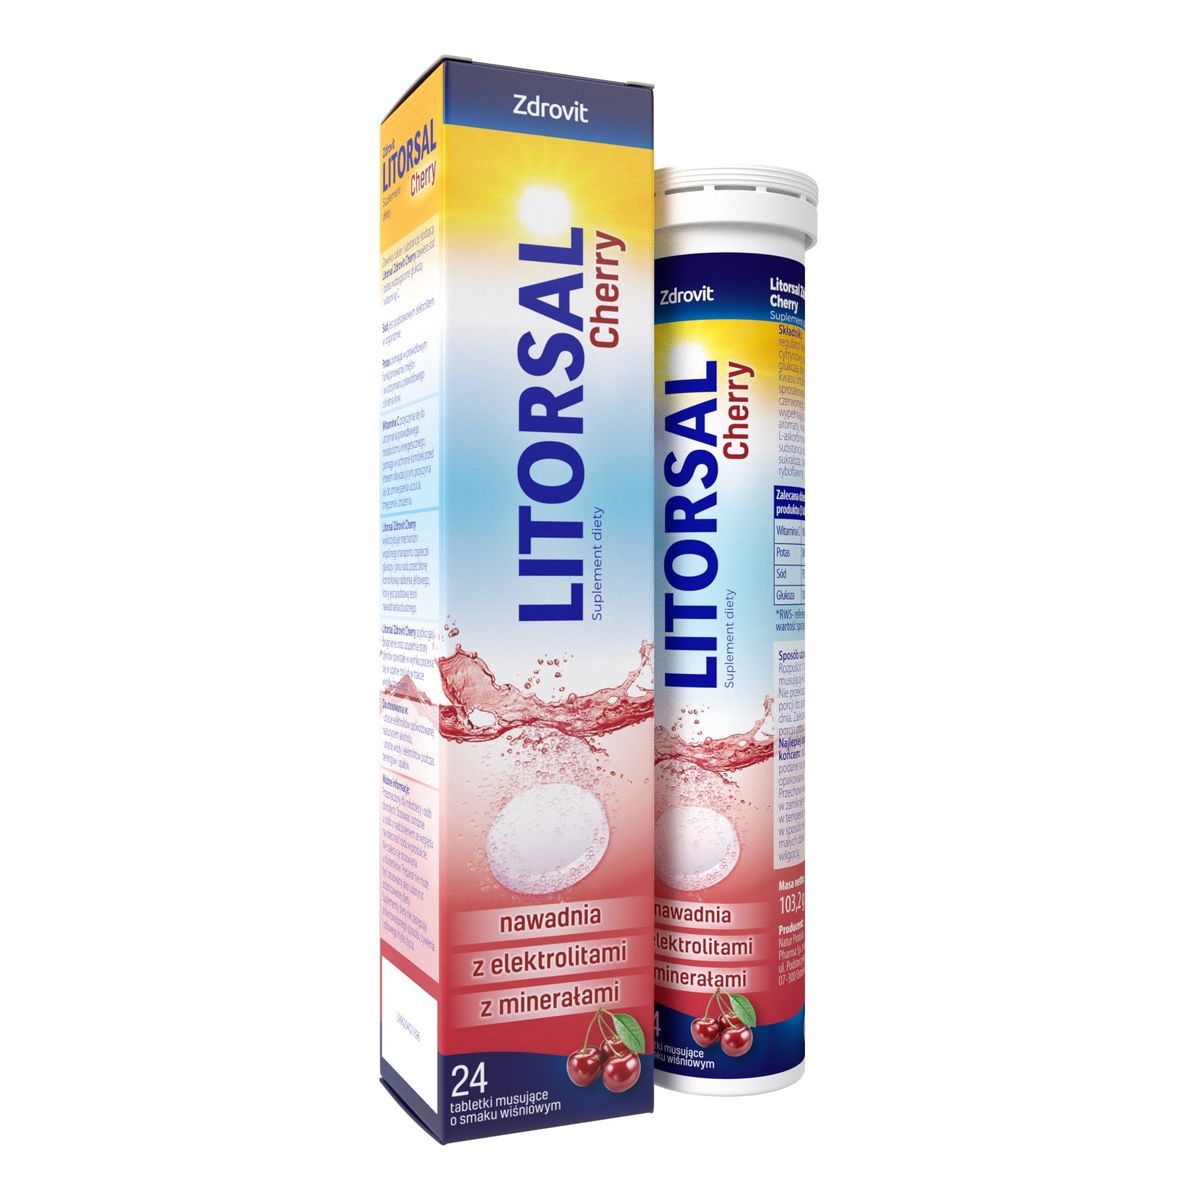 Zdrovit Litorsal cherry 24 tabletki musujące-smak wiśniowy